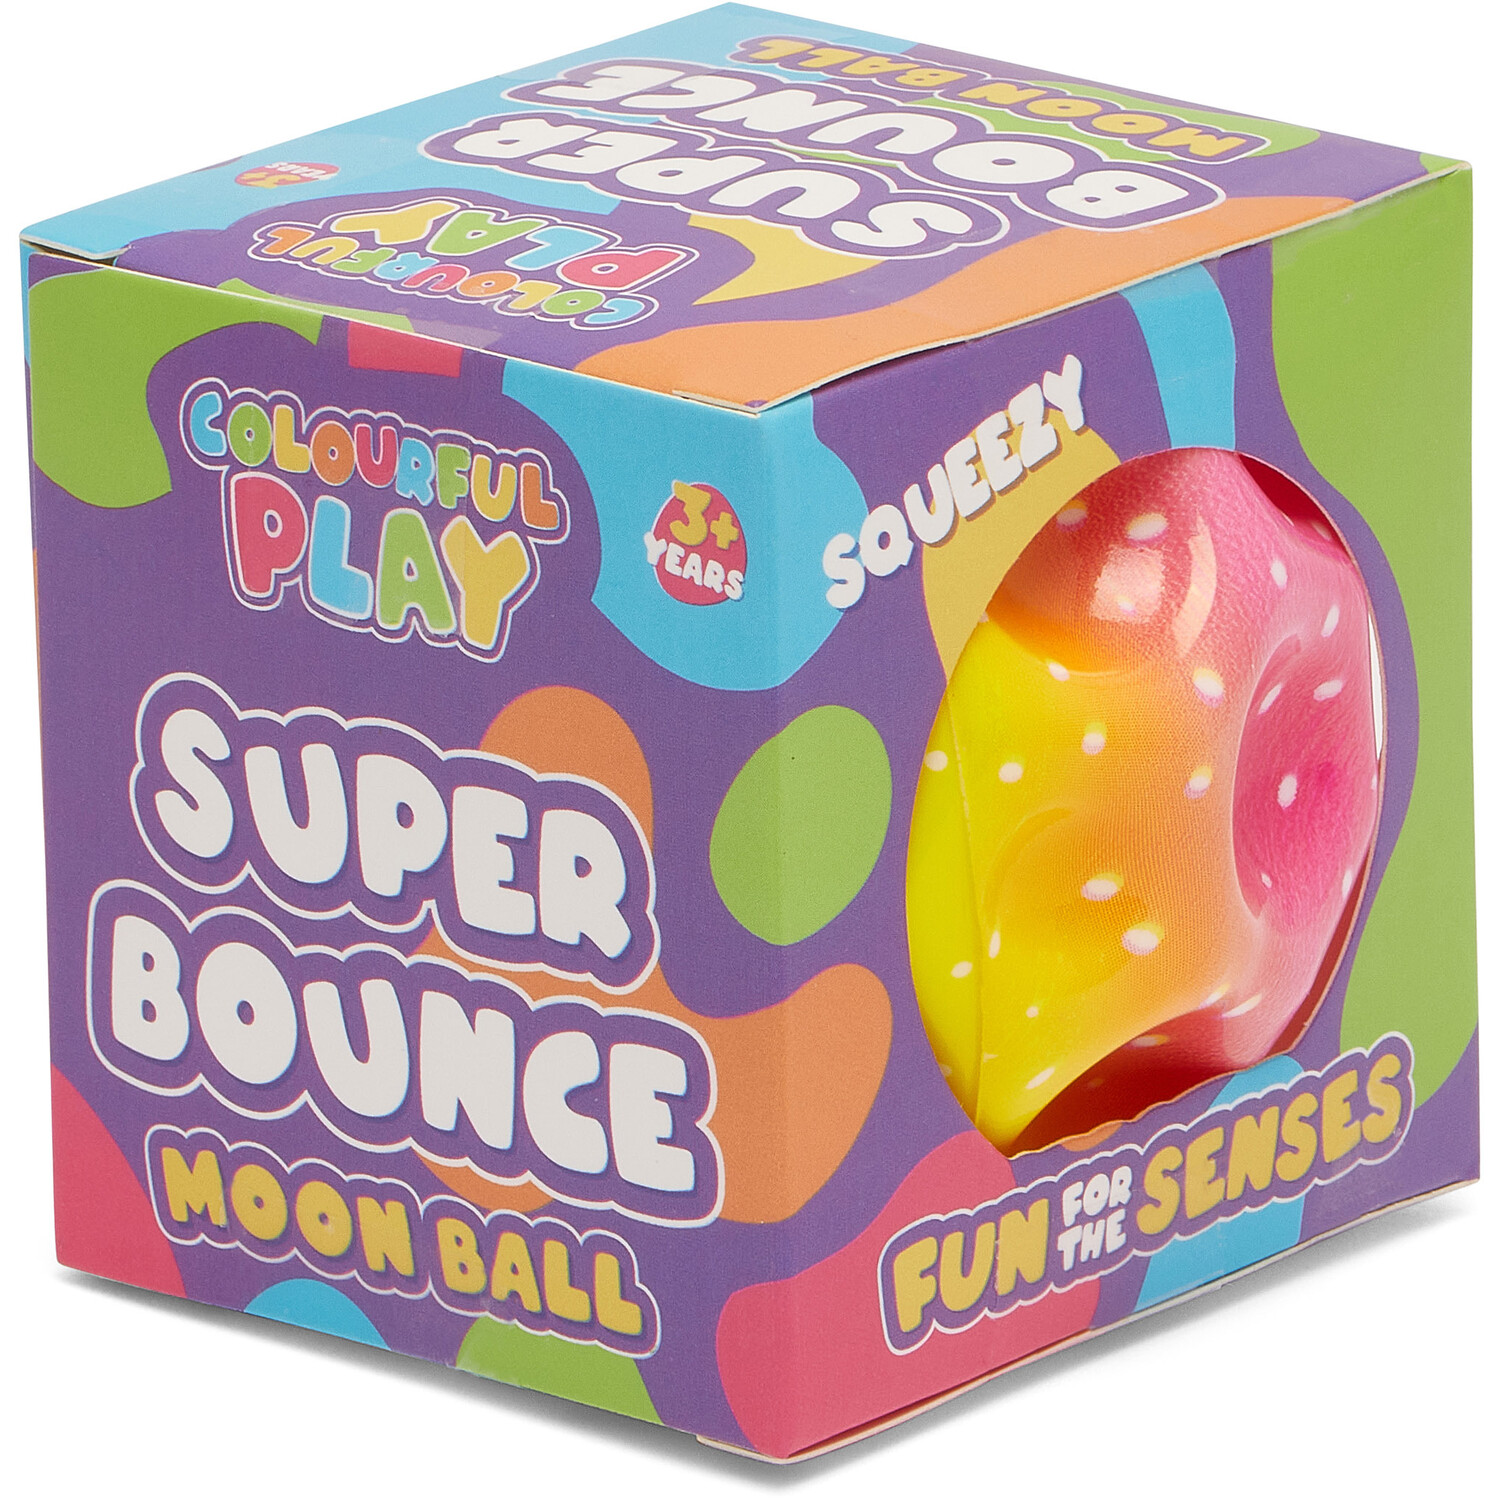 Super Bounce Moon Ball Image 5